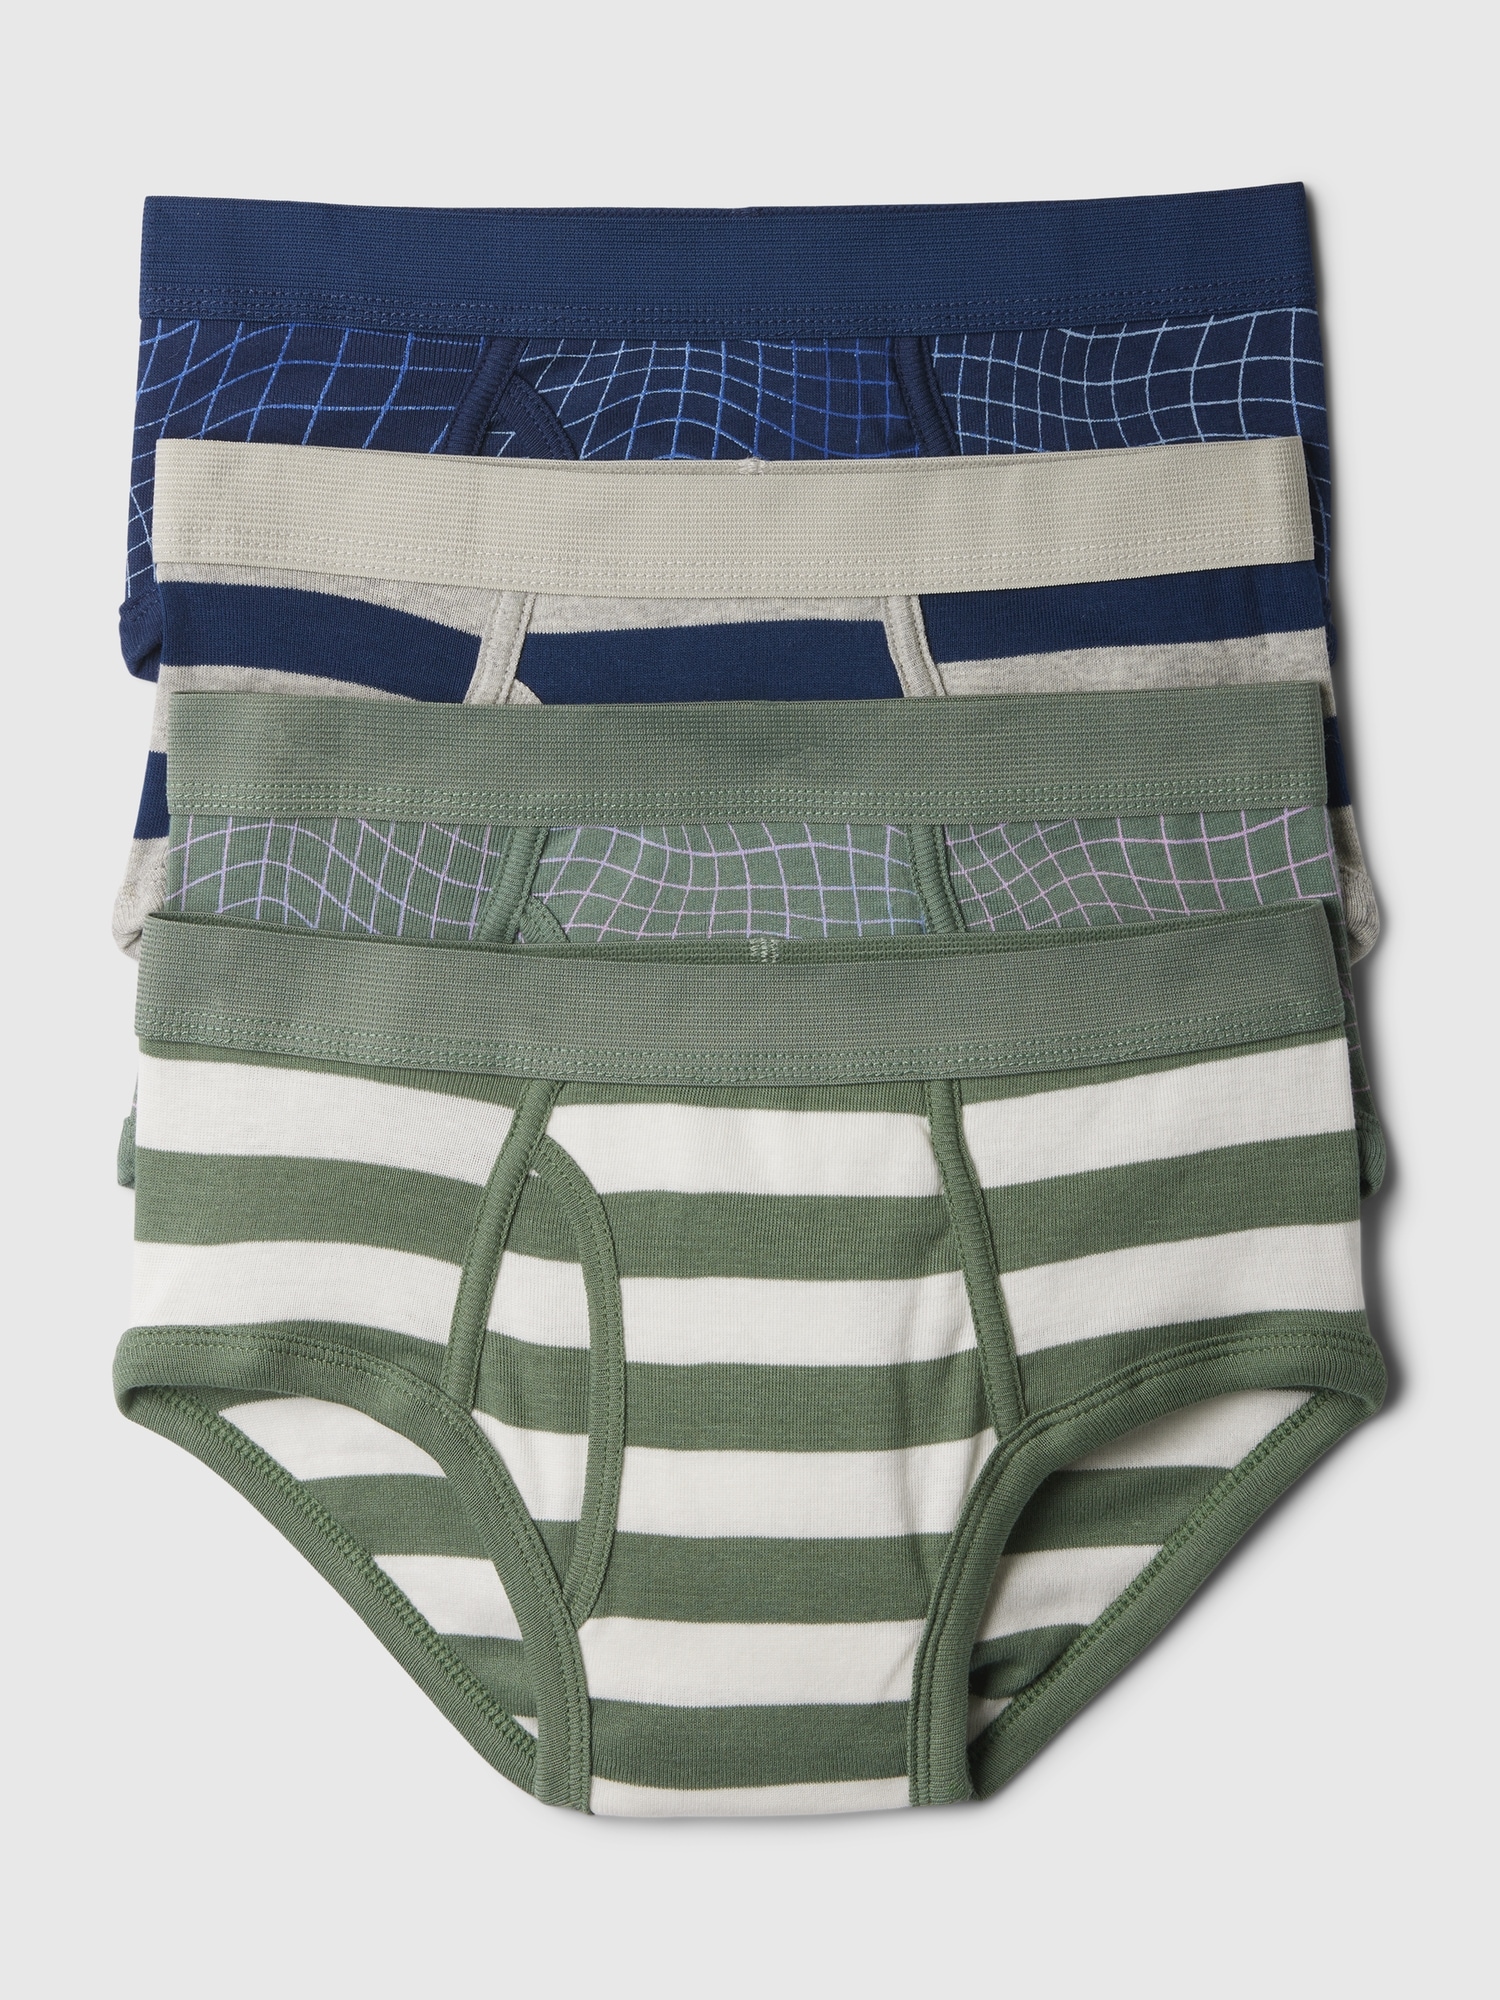 Underwear Briefs 4-Pack for Toddler Boys